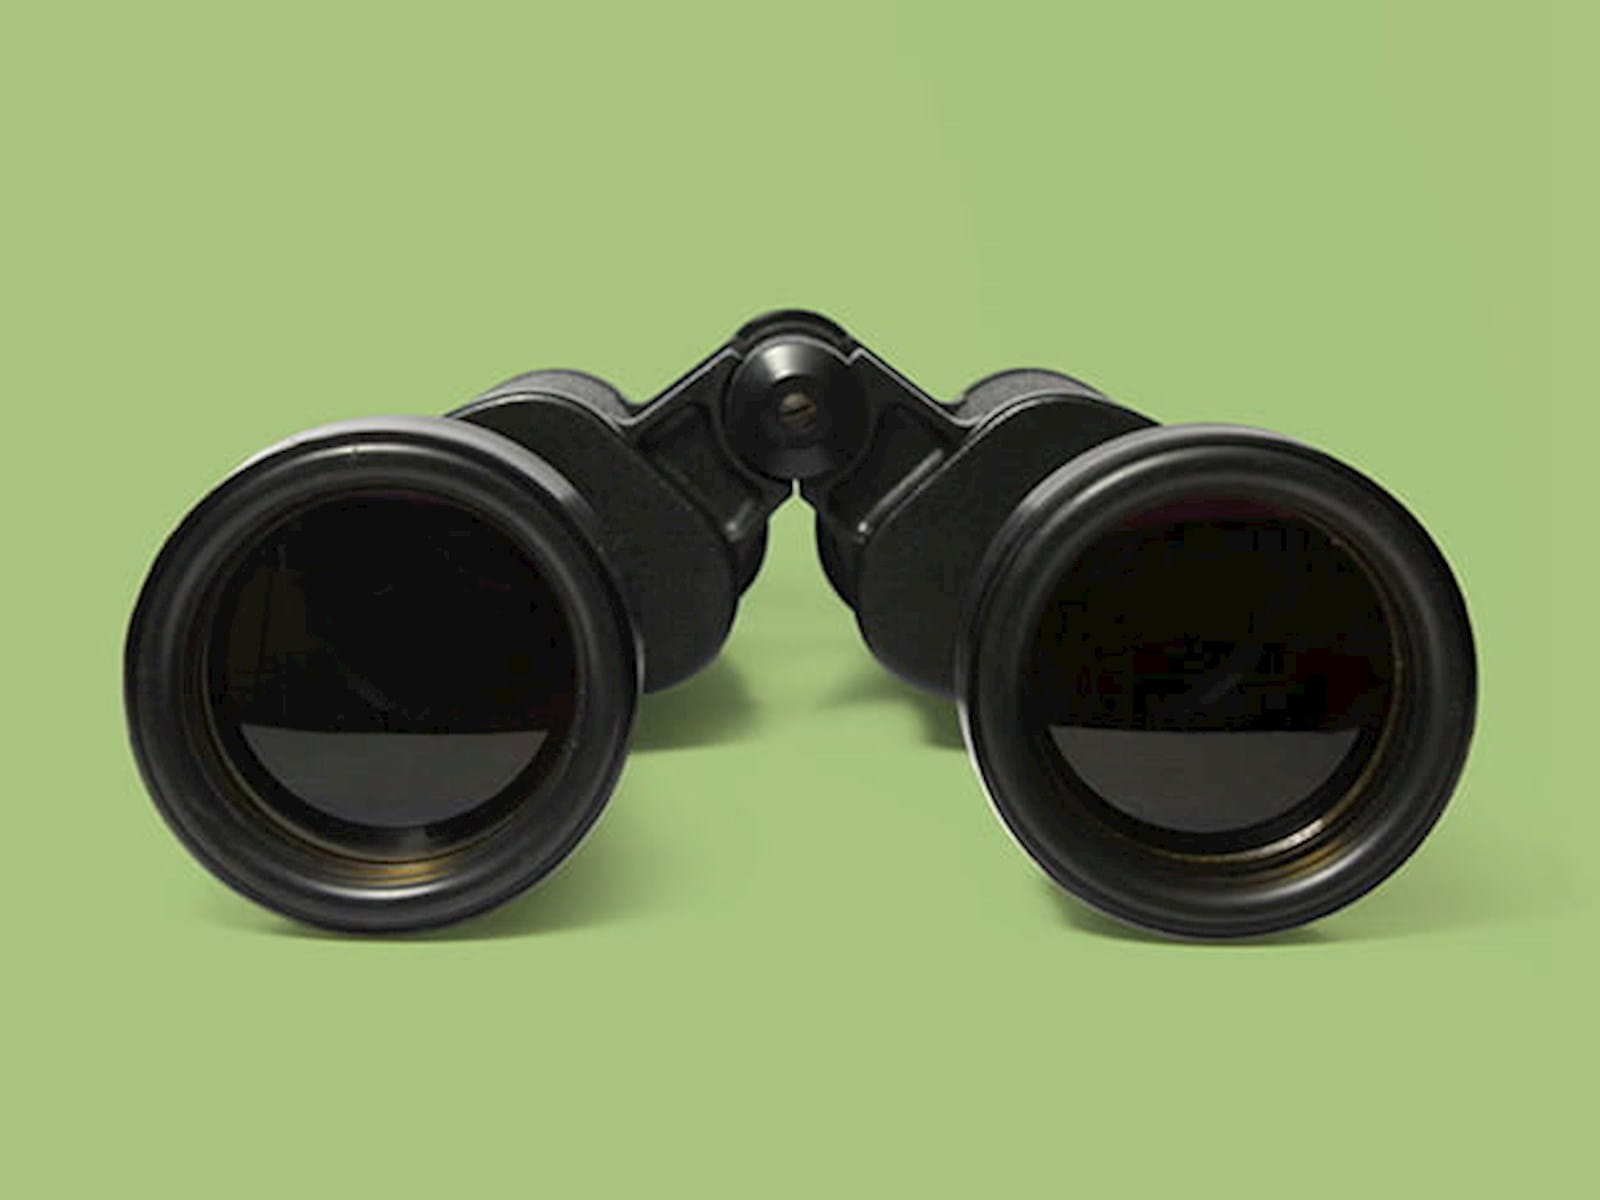 A pair of binoculars